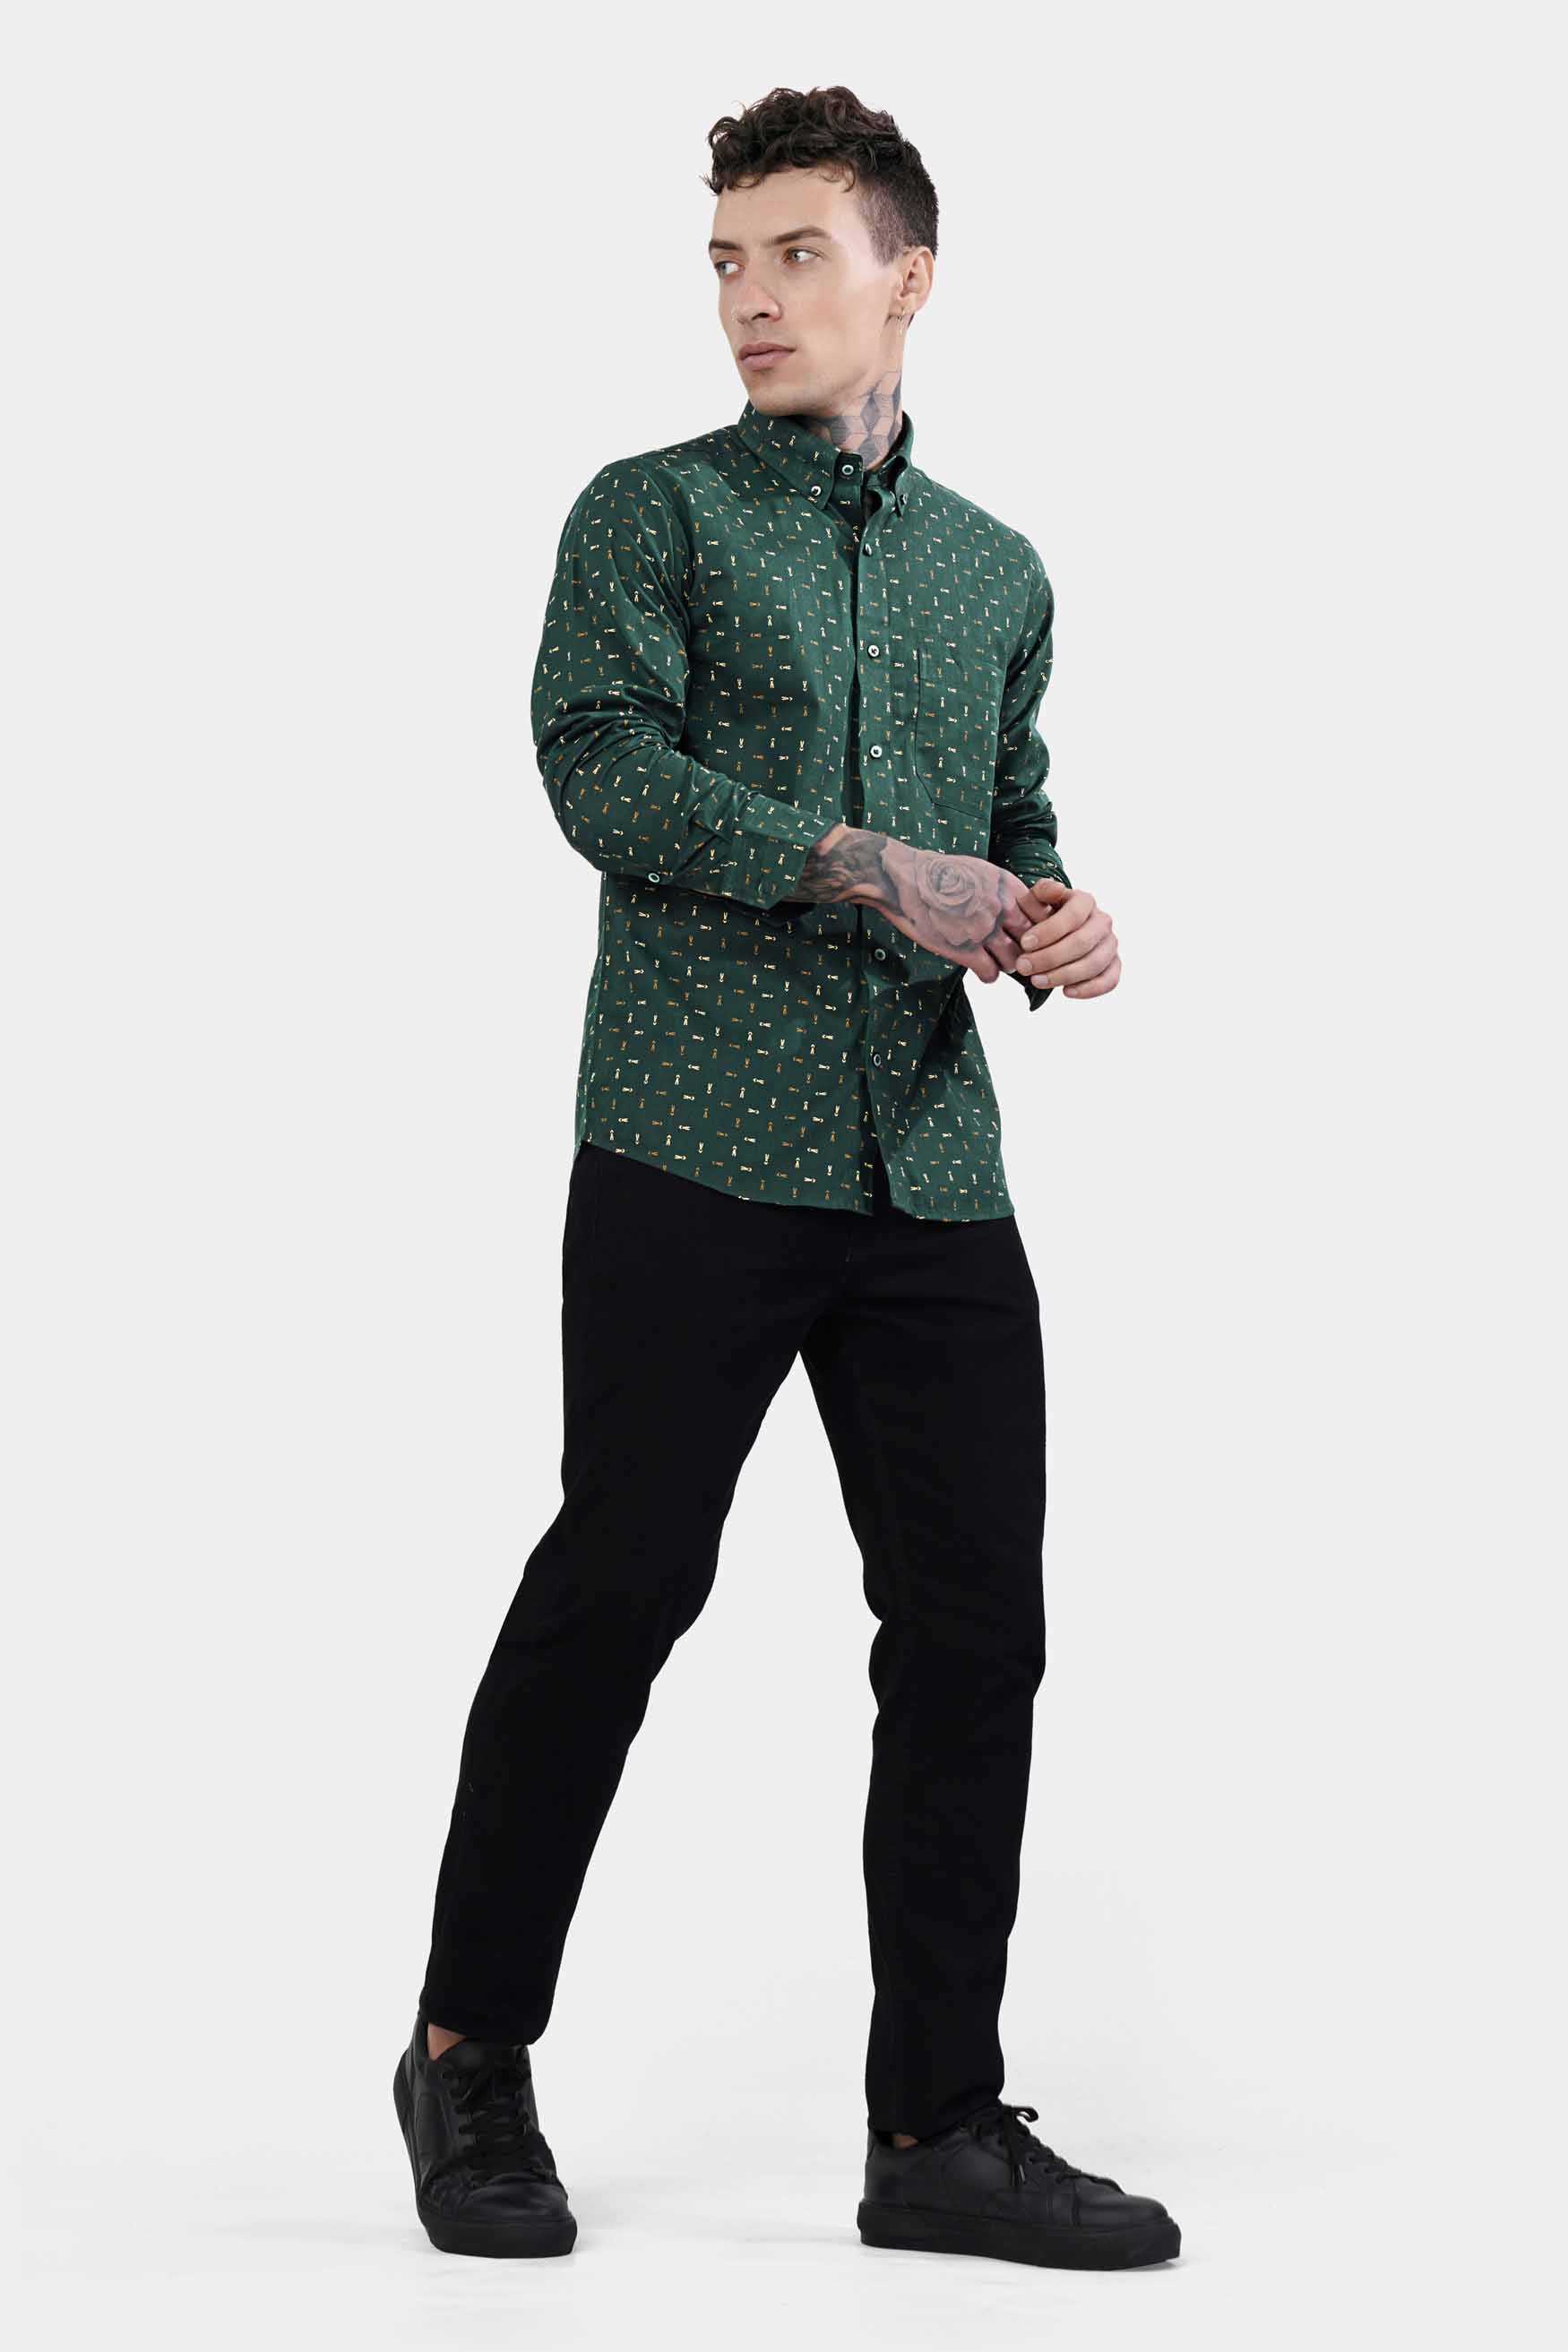 Everglade Green and Desert Brown Luxurious Linen Button Down Shirt